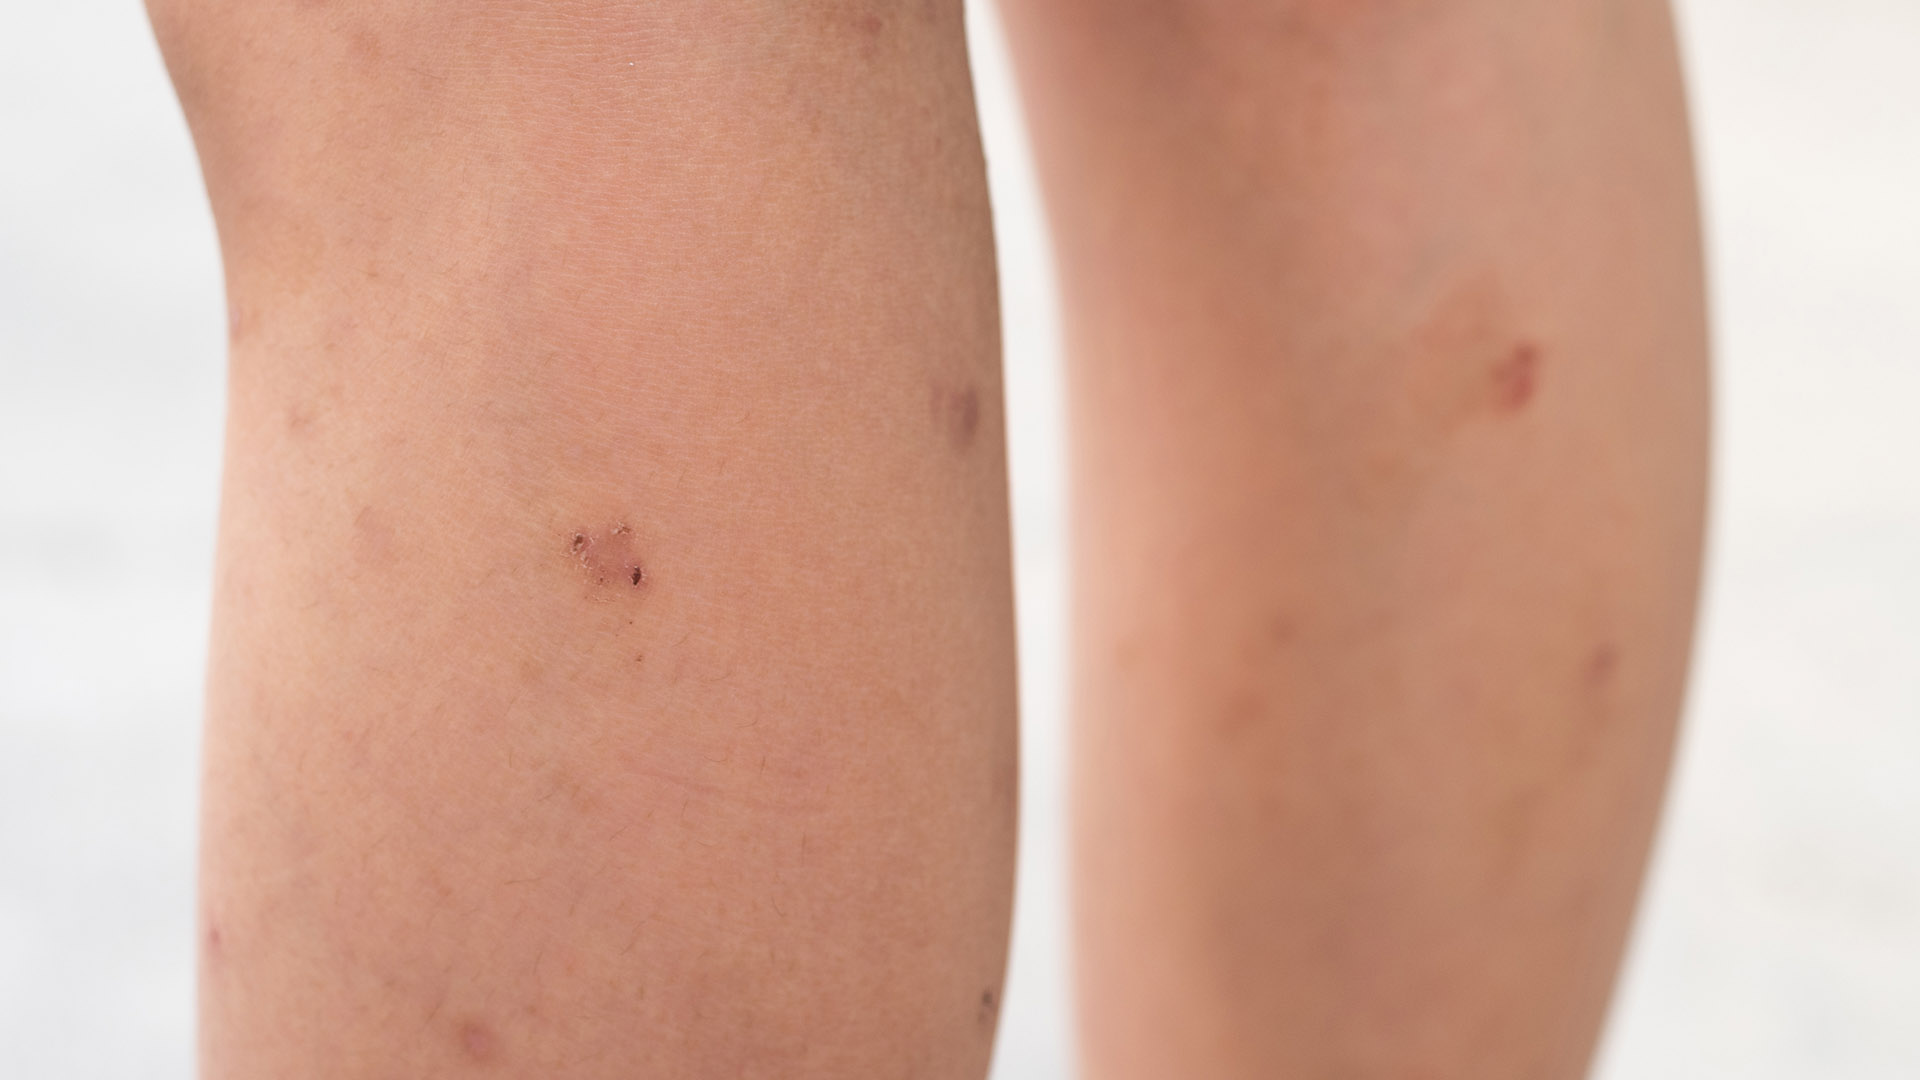 Los tumores (lesiones) del sarcoma de Kaposi suelen manifestarse como puntos violáceos indoloros en las piernas, los pies o el rostro(Shutterstock)